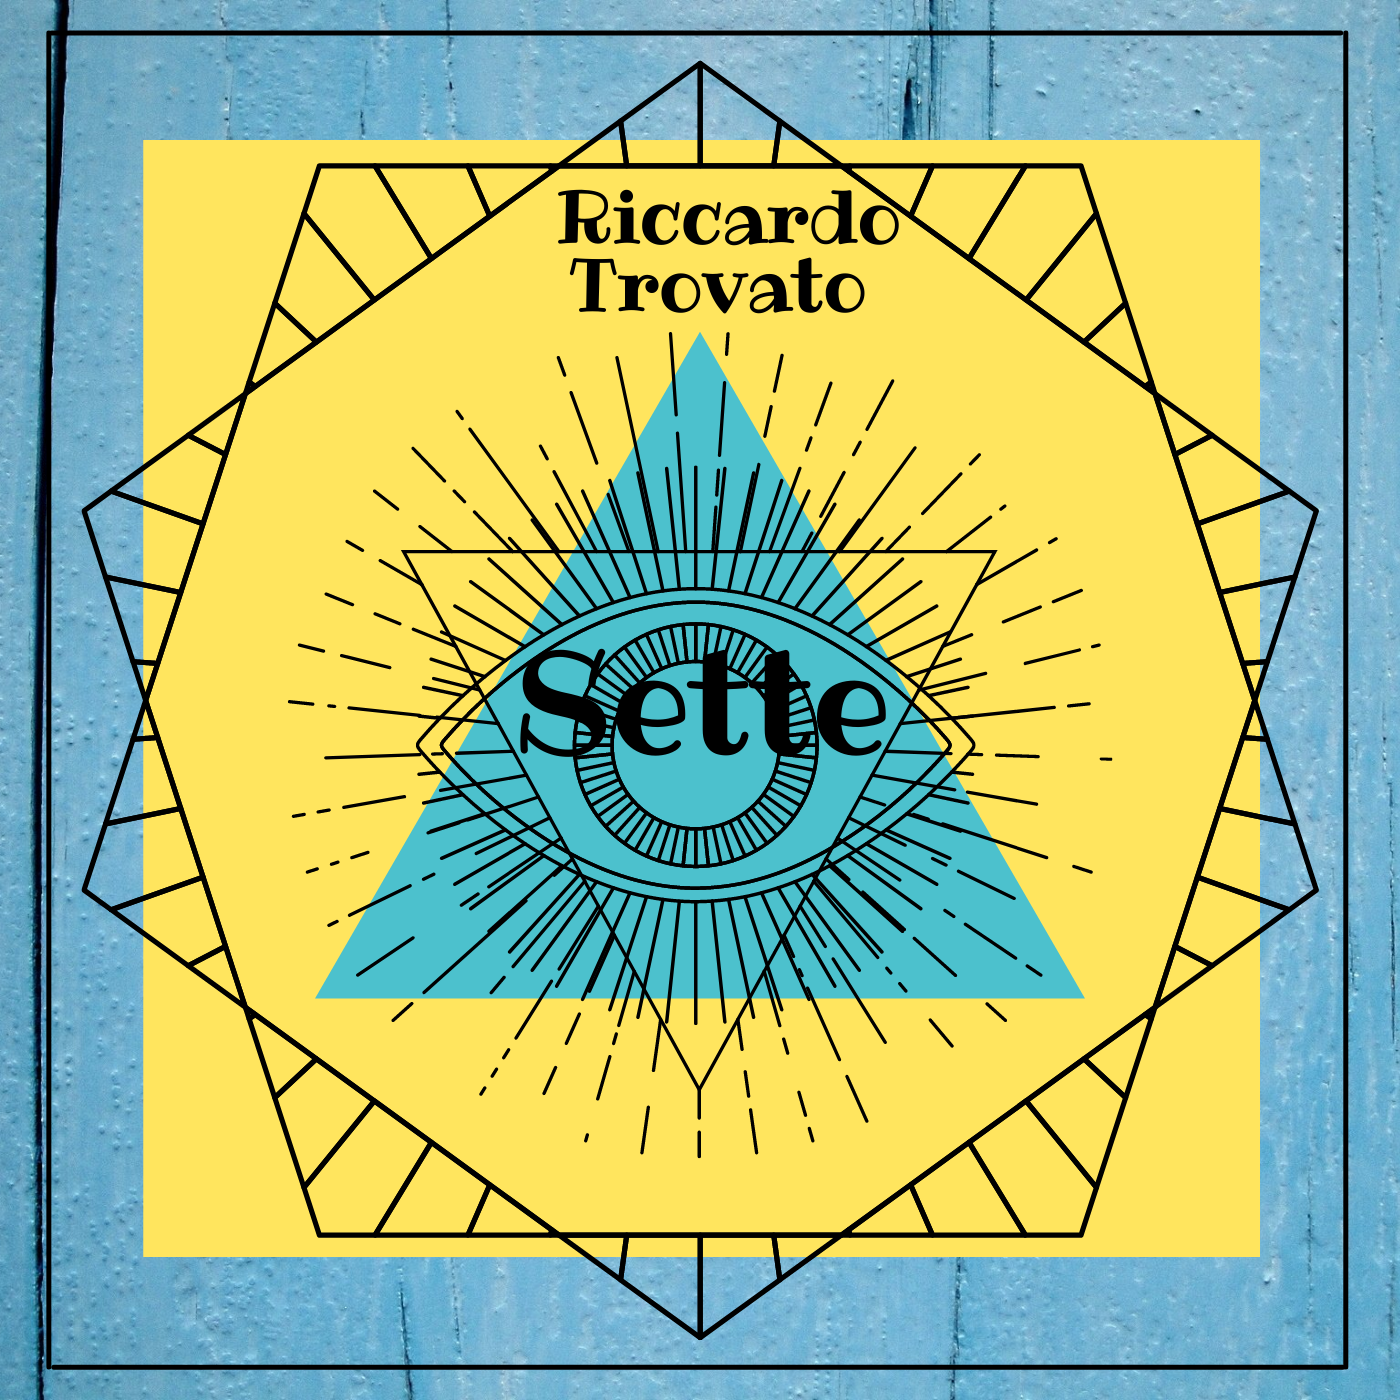 SETTE è il primo album solista di Riccardo Trovato